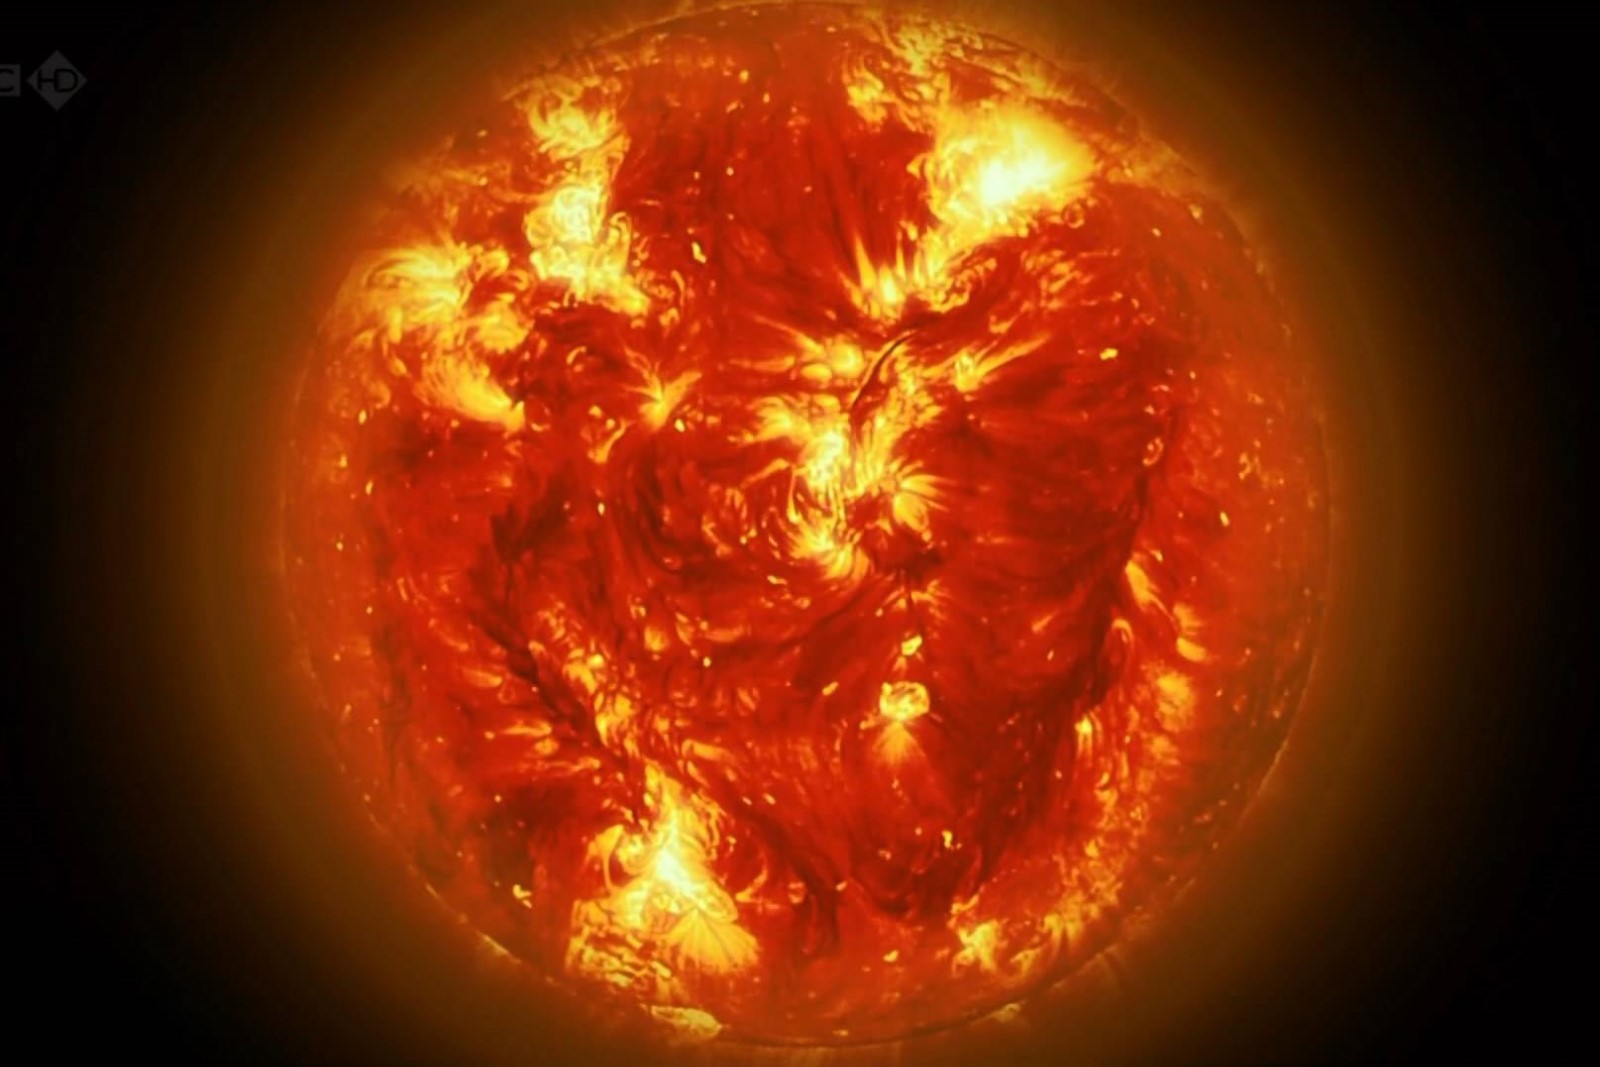 同样是"核聚变,为何太阳能燃烧百亿年,氢弹却很快就爆炸了?